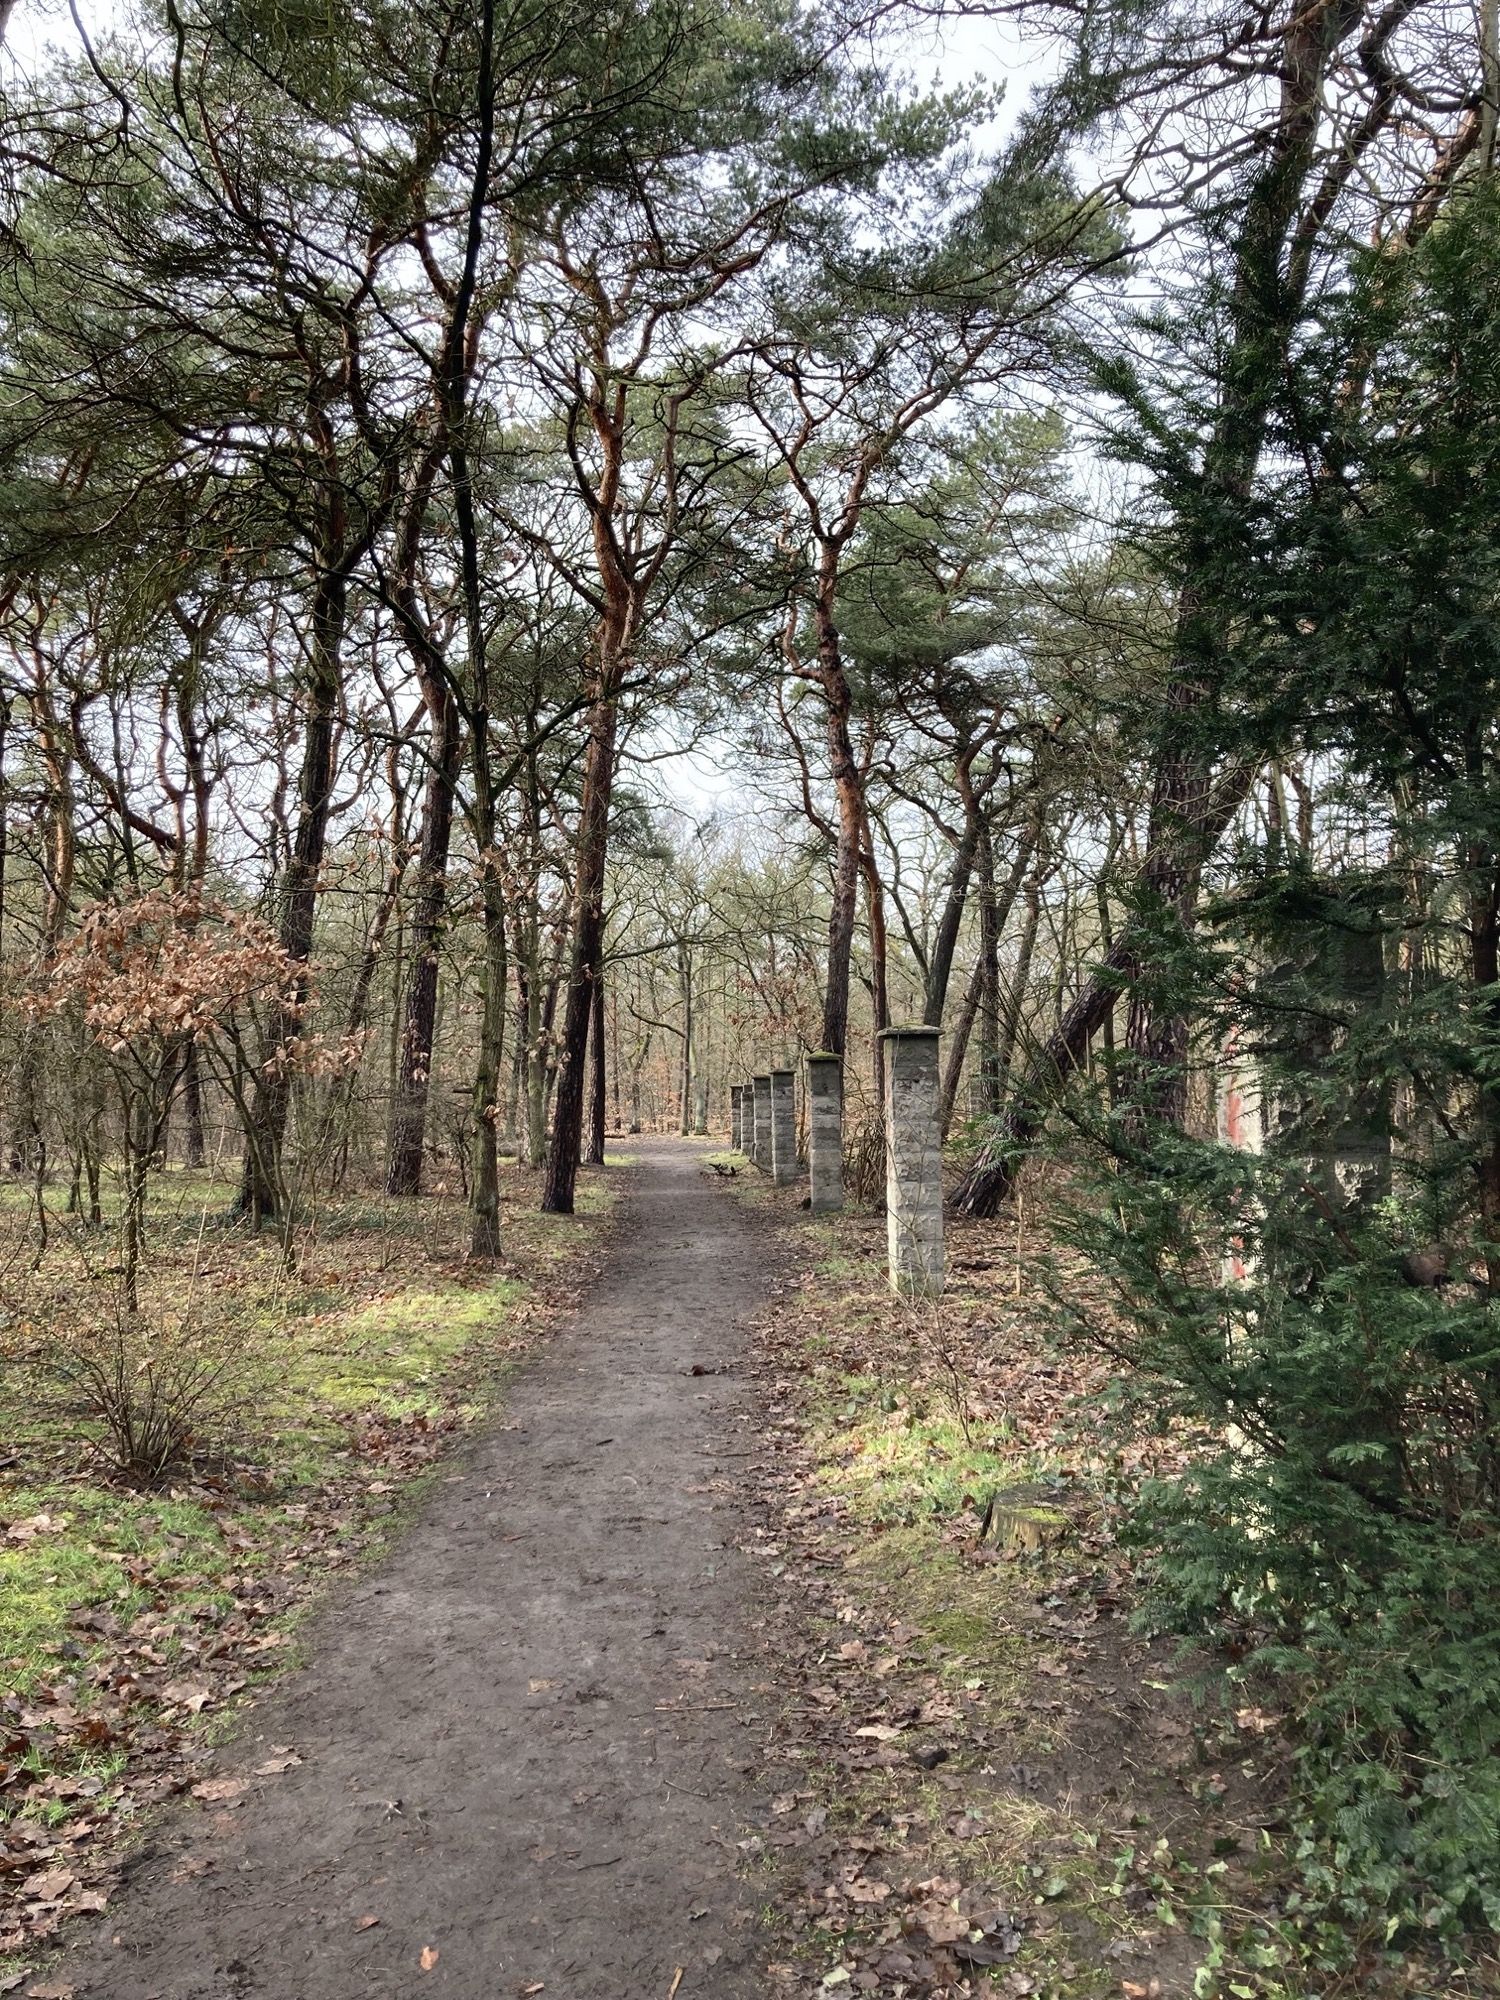 Waldweg mit grünen Nadelbäumen, rechts des Weges stehen in regelmäßigen Abständen Steinsäulen